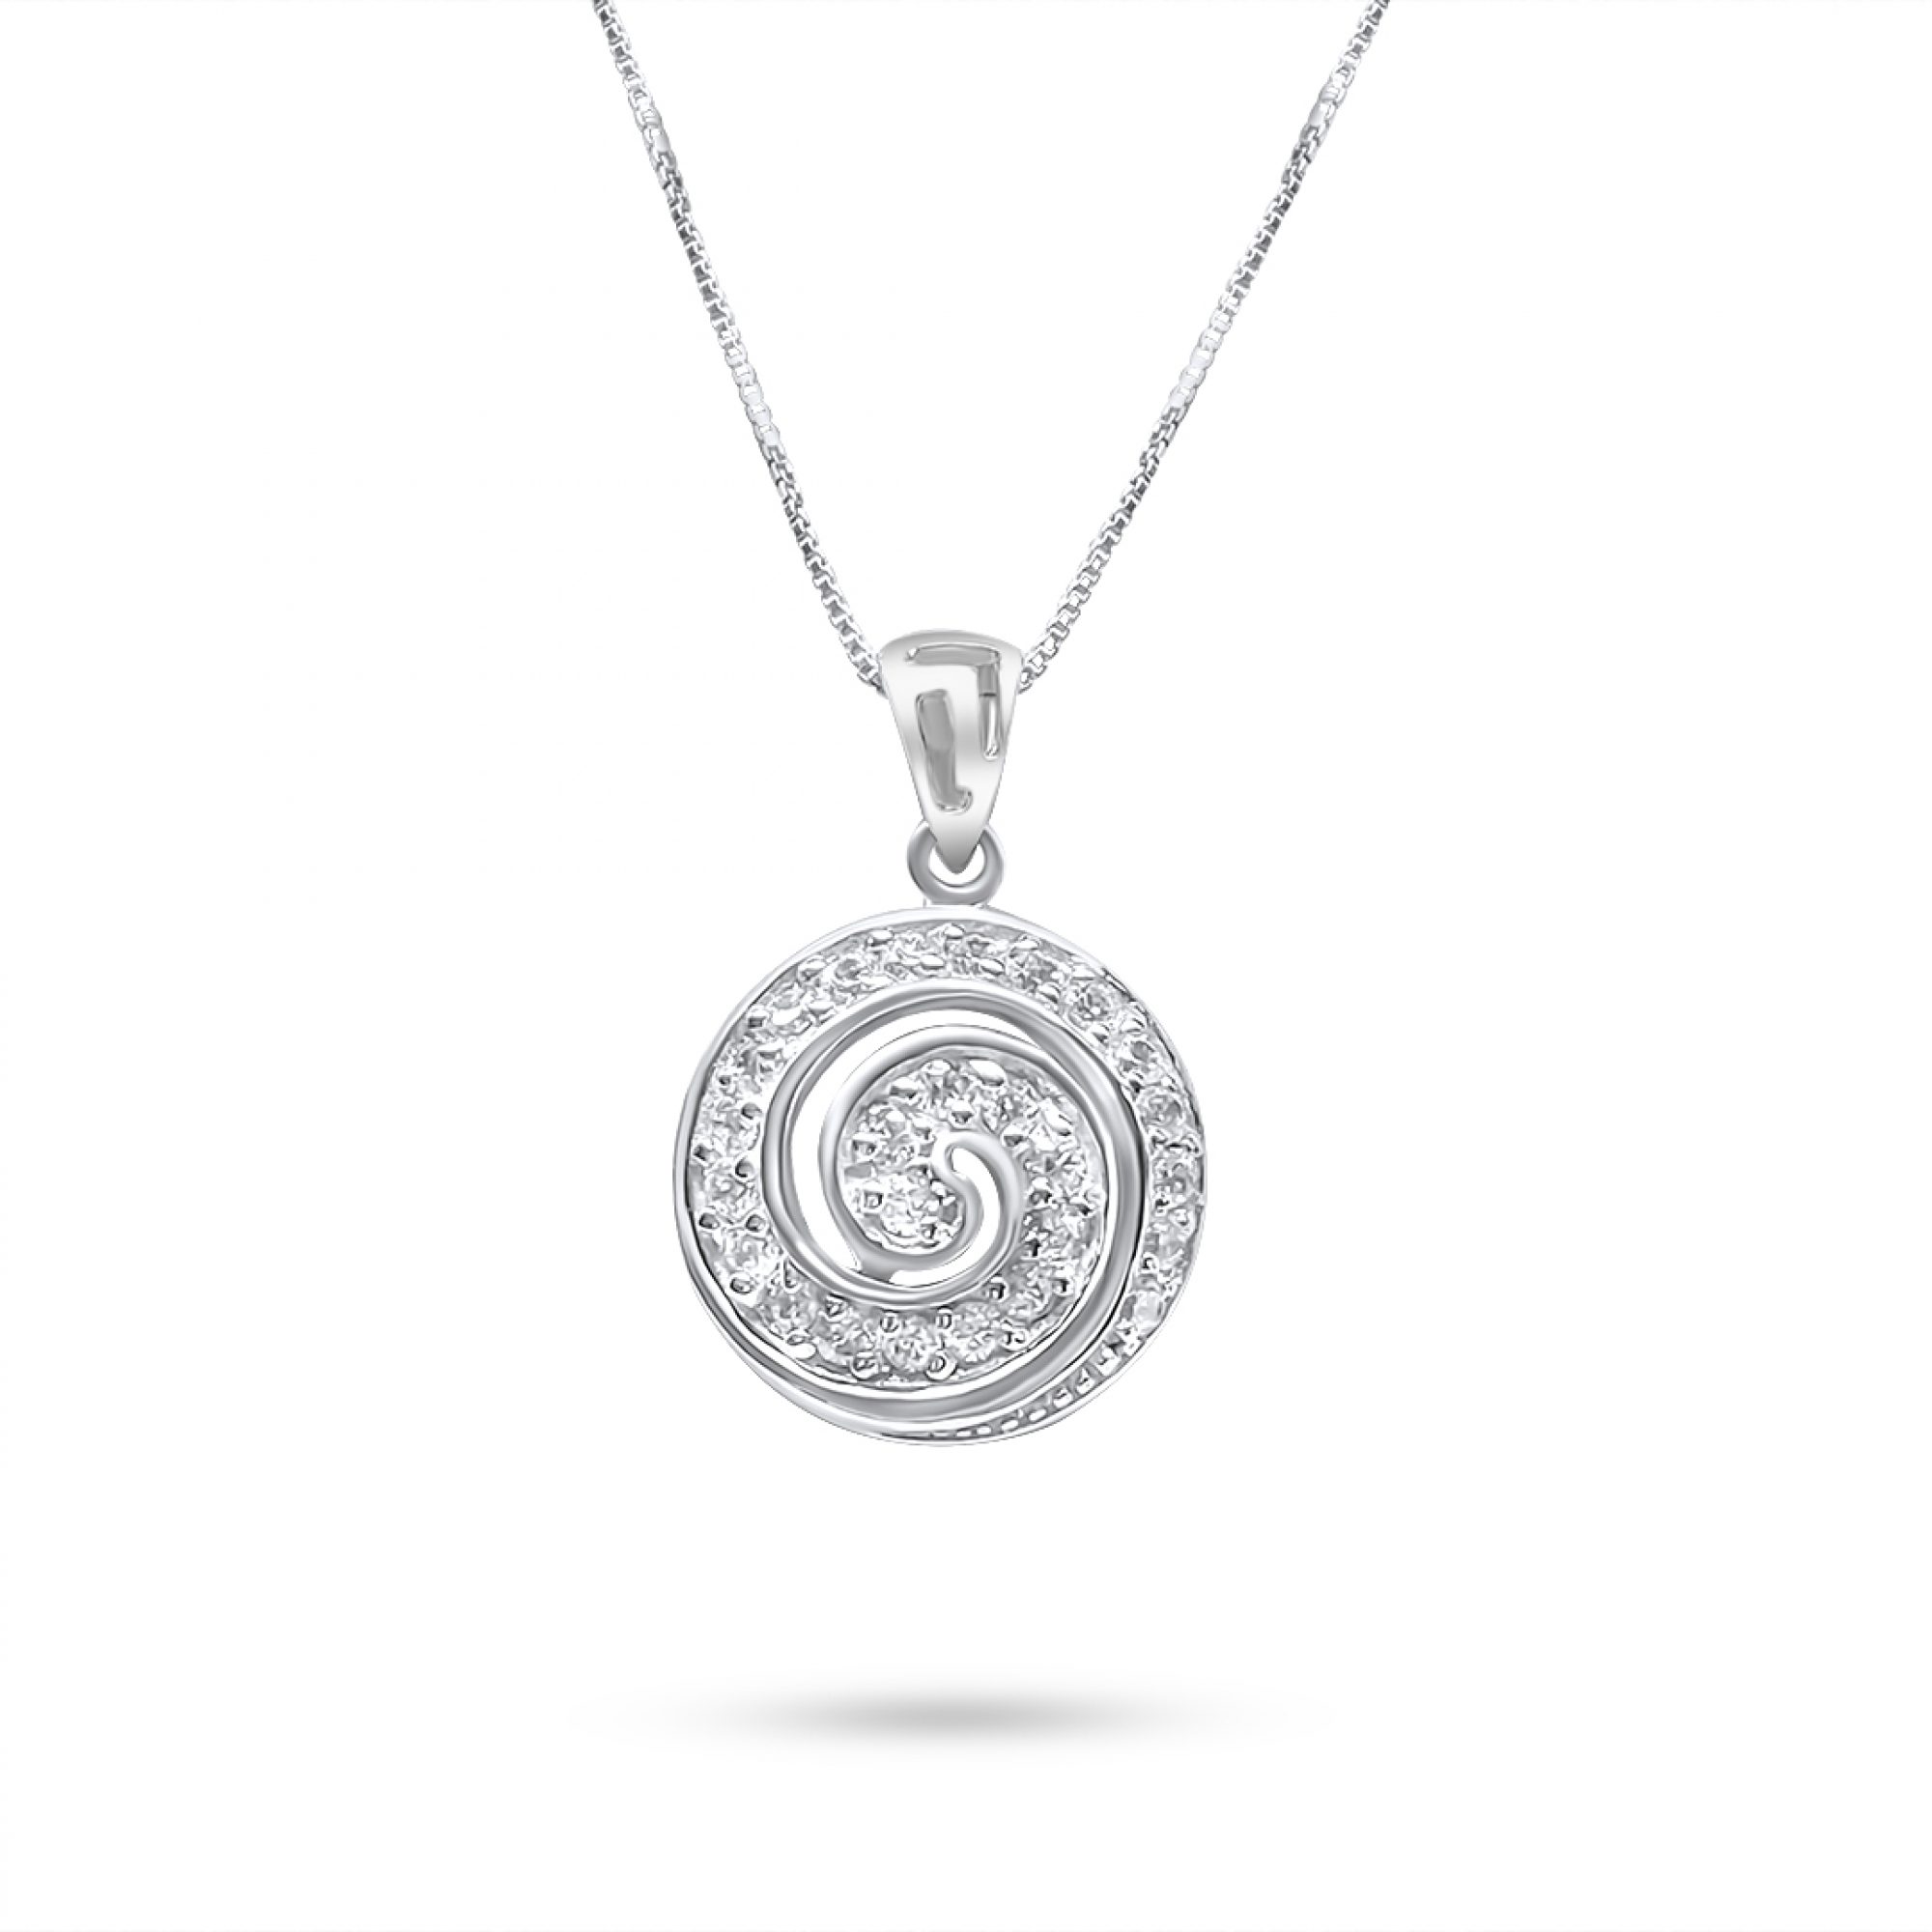 Spiral pendant with zircon stones